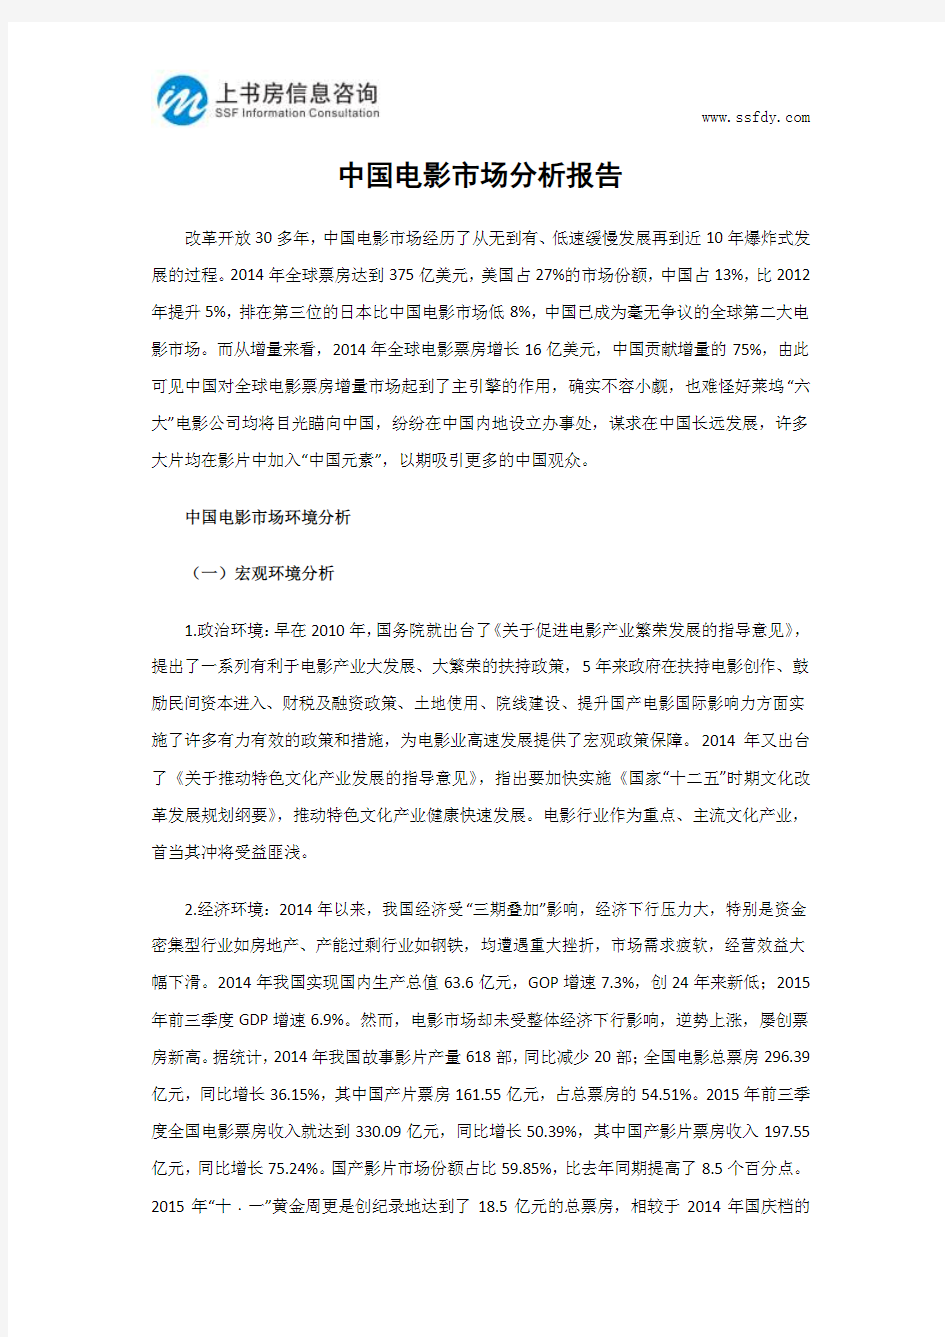 中国电影市场分析报告-上书房信息咨询